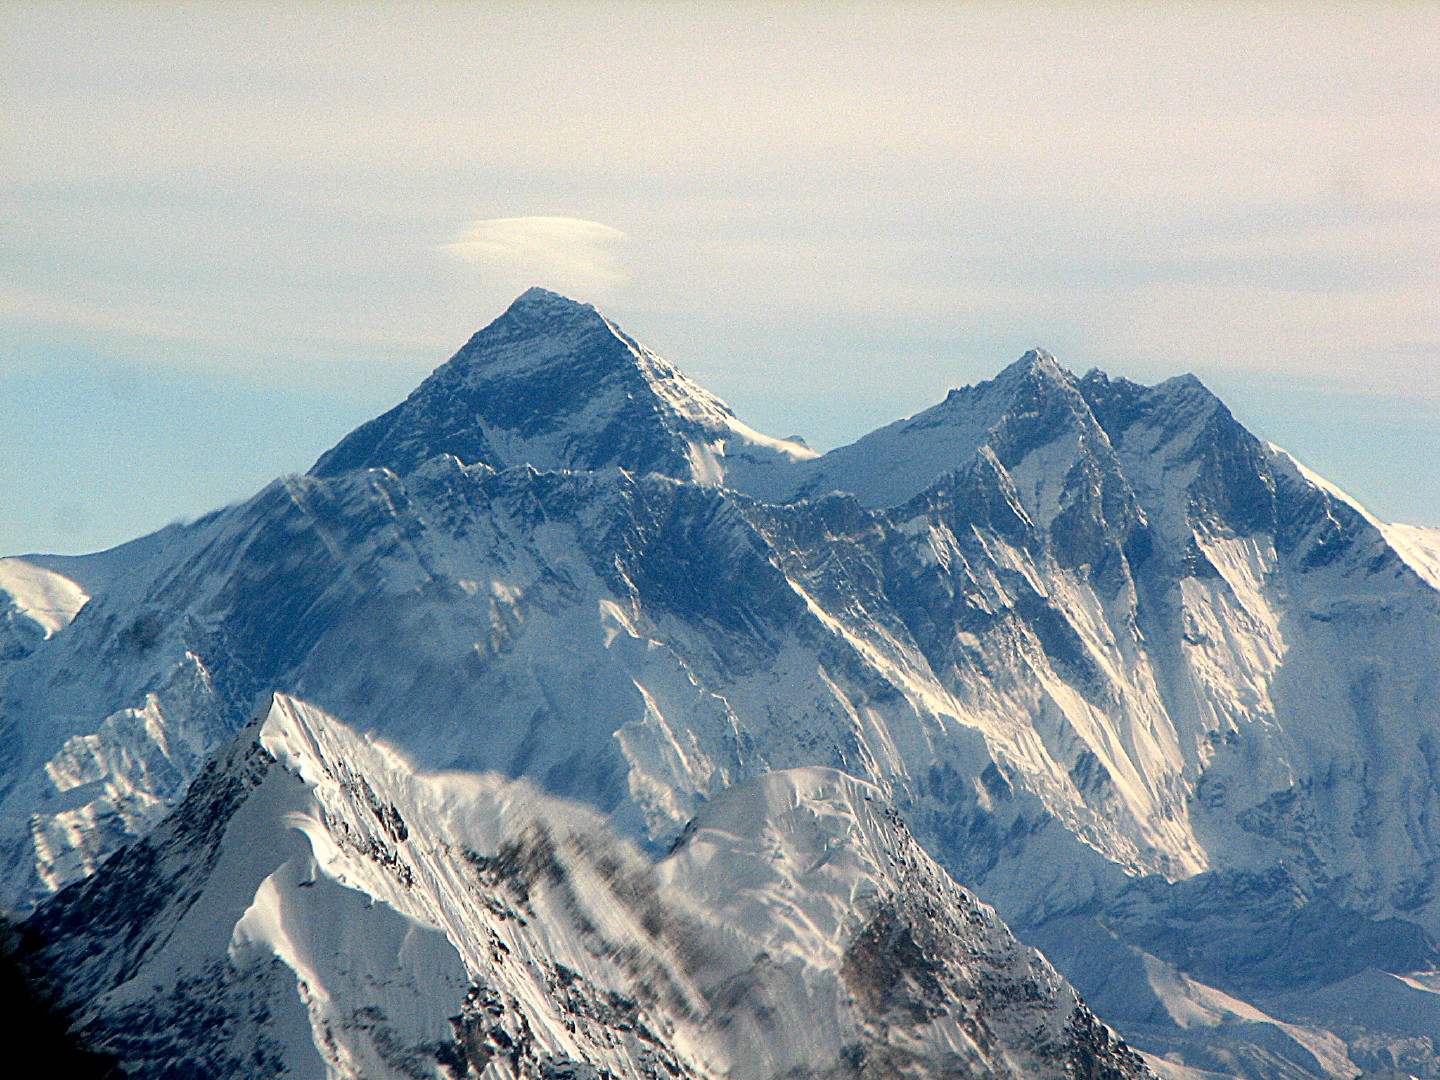 IMG_2735 Everest and Lhotse.JPG